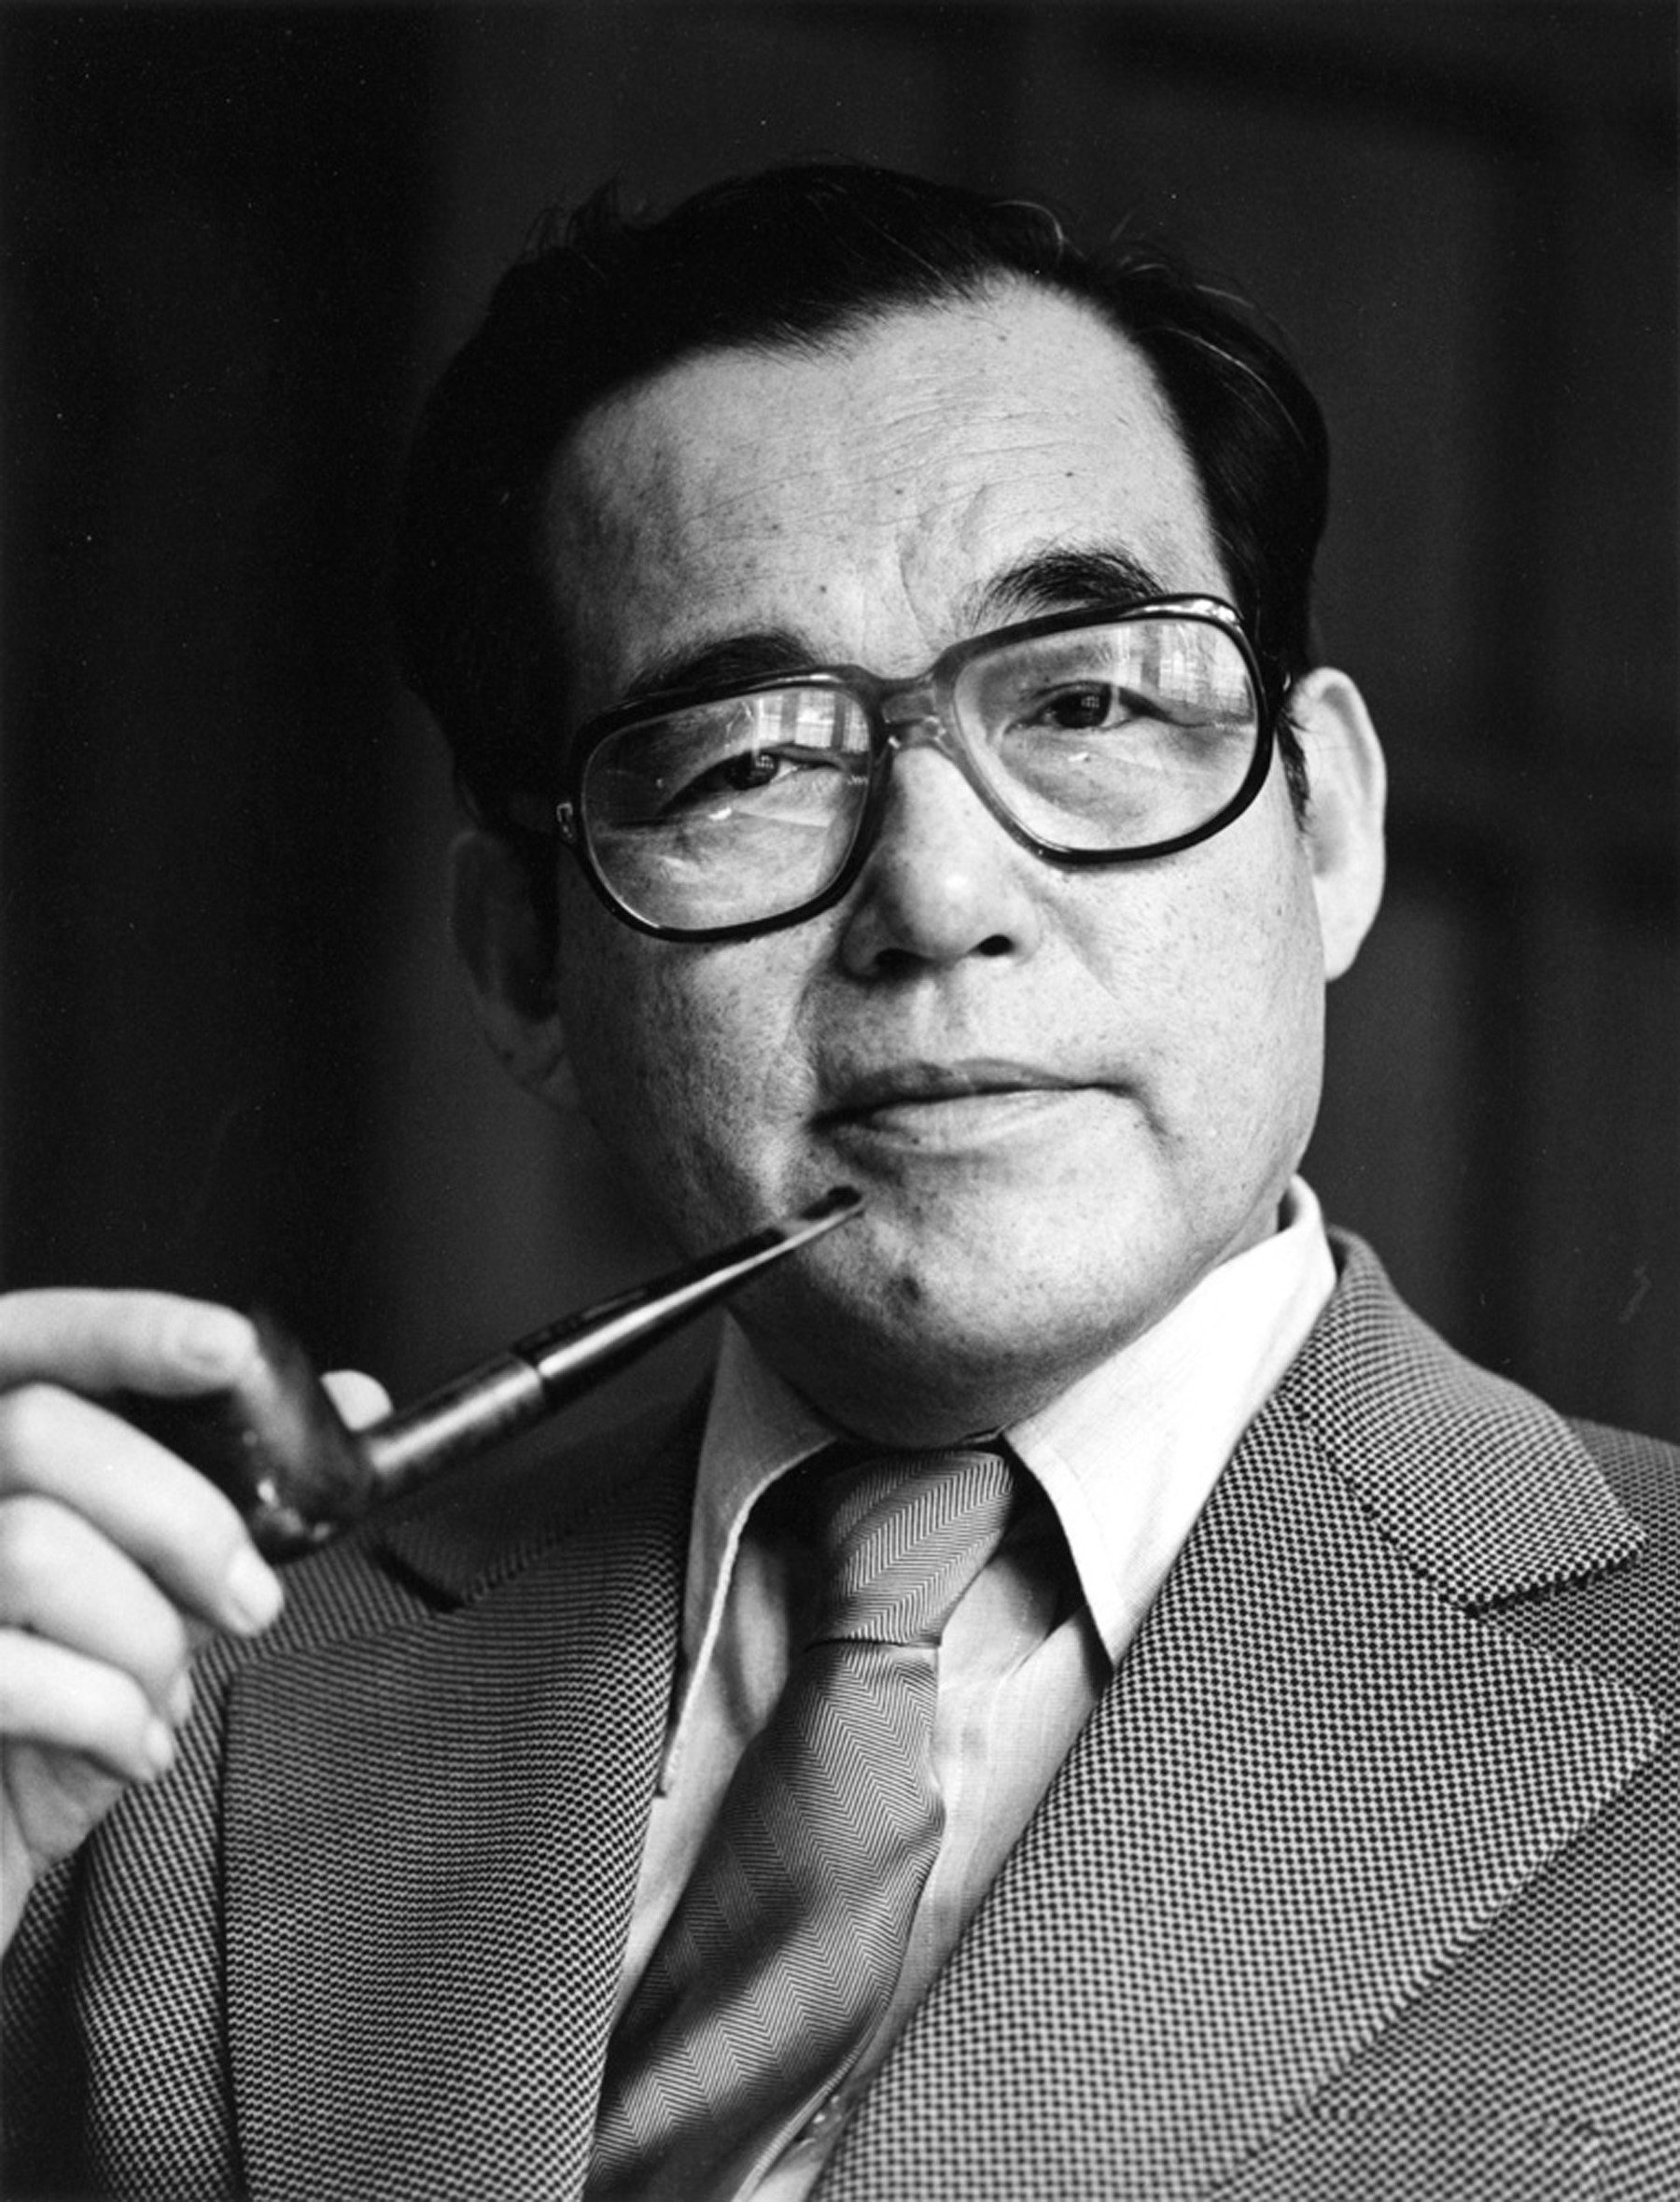 A portrait of Joseph Mitsuo Kitagawa.